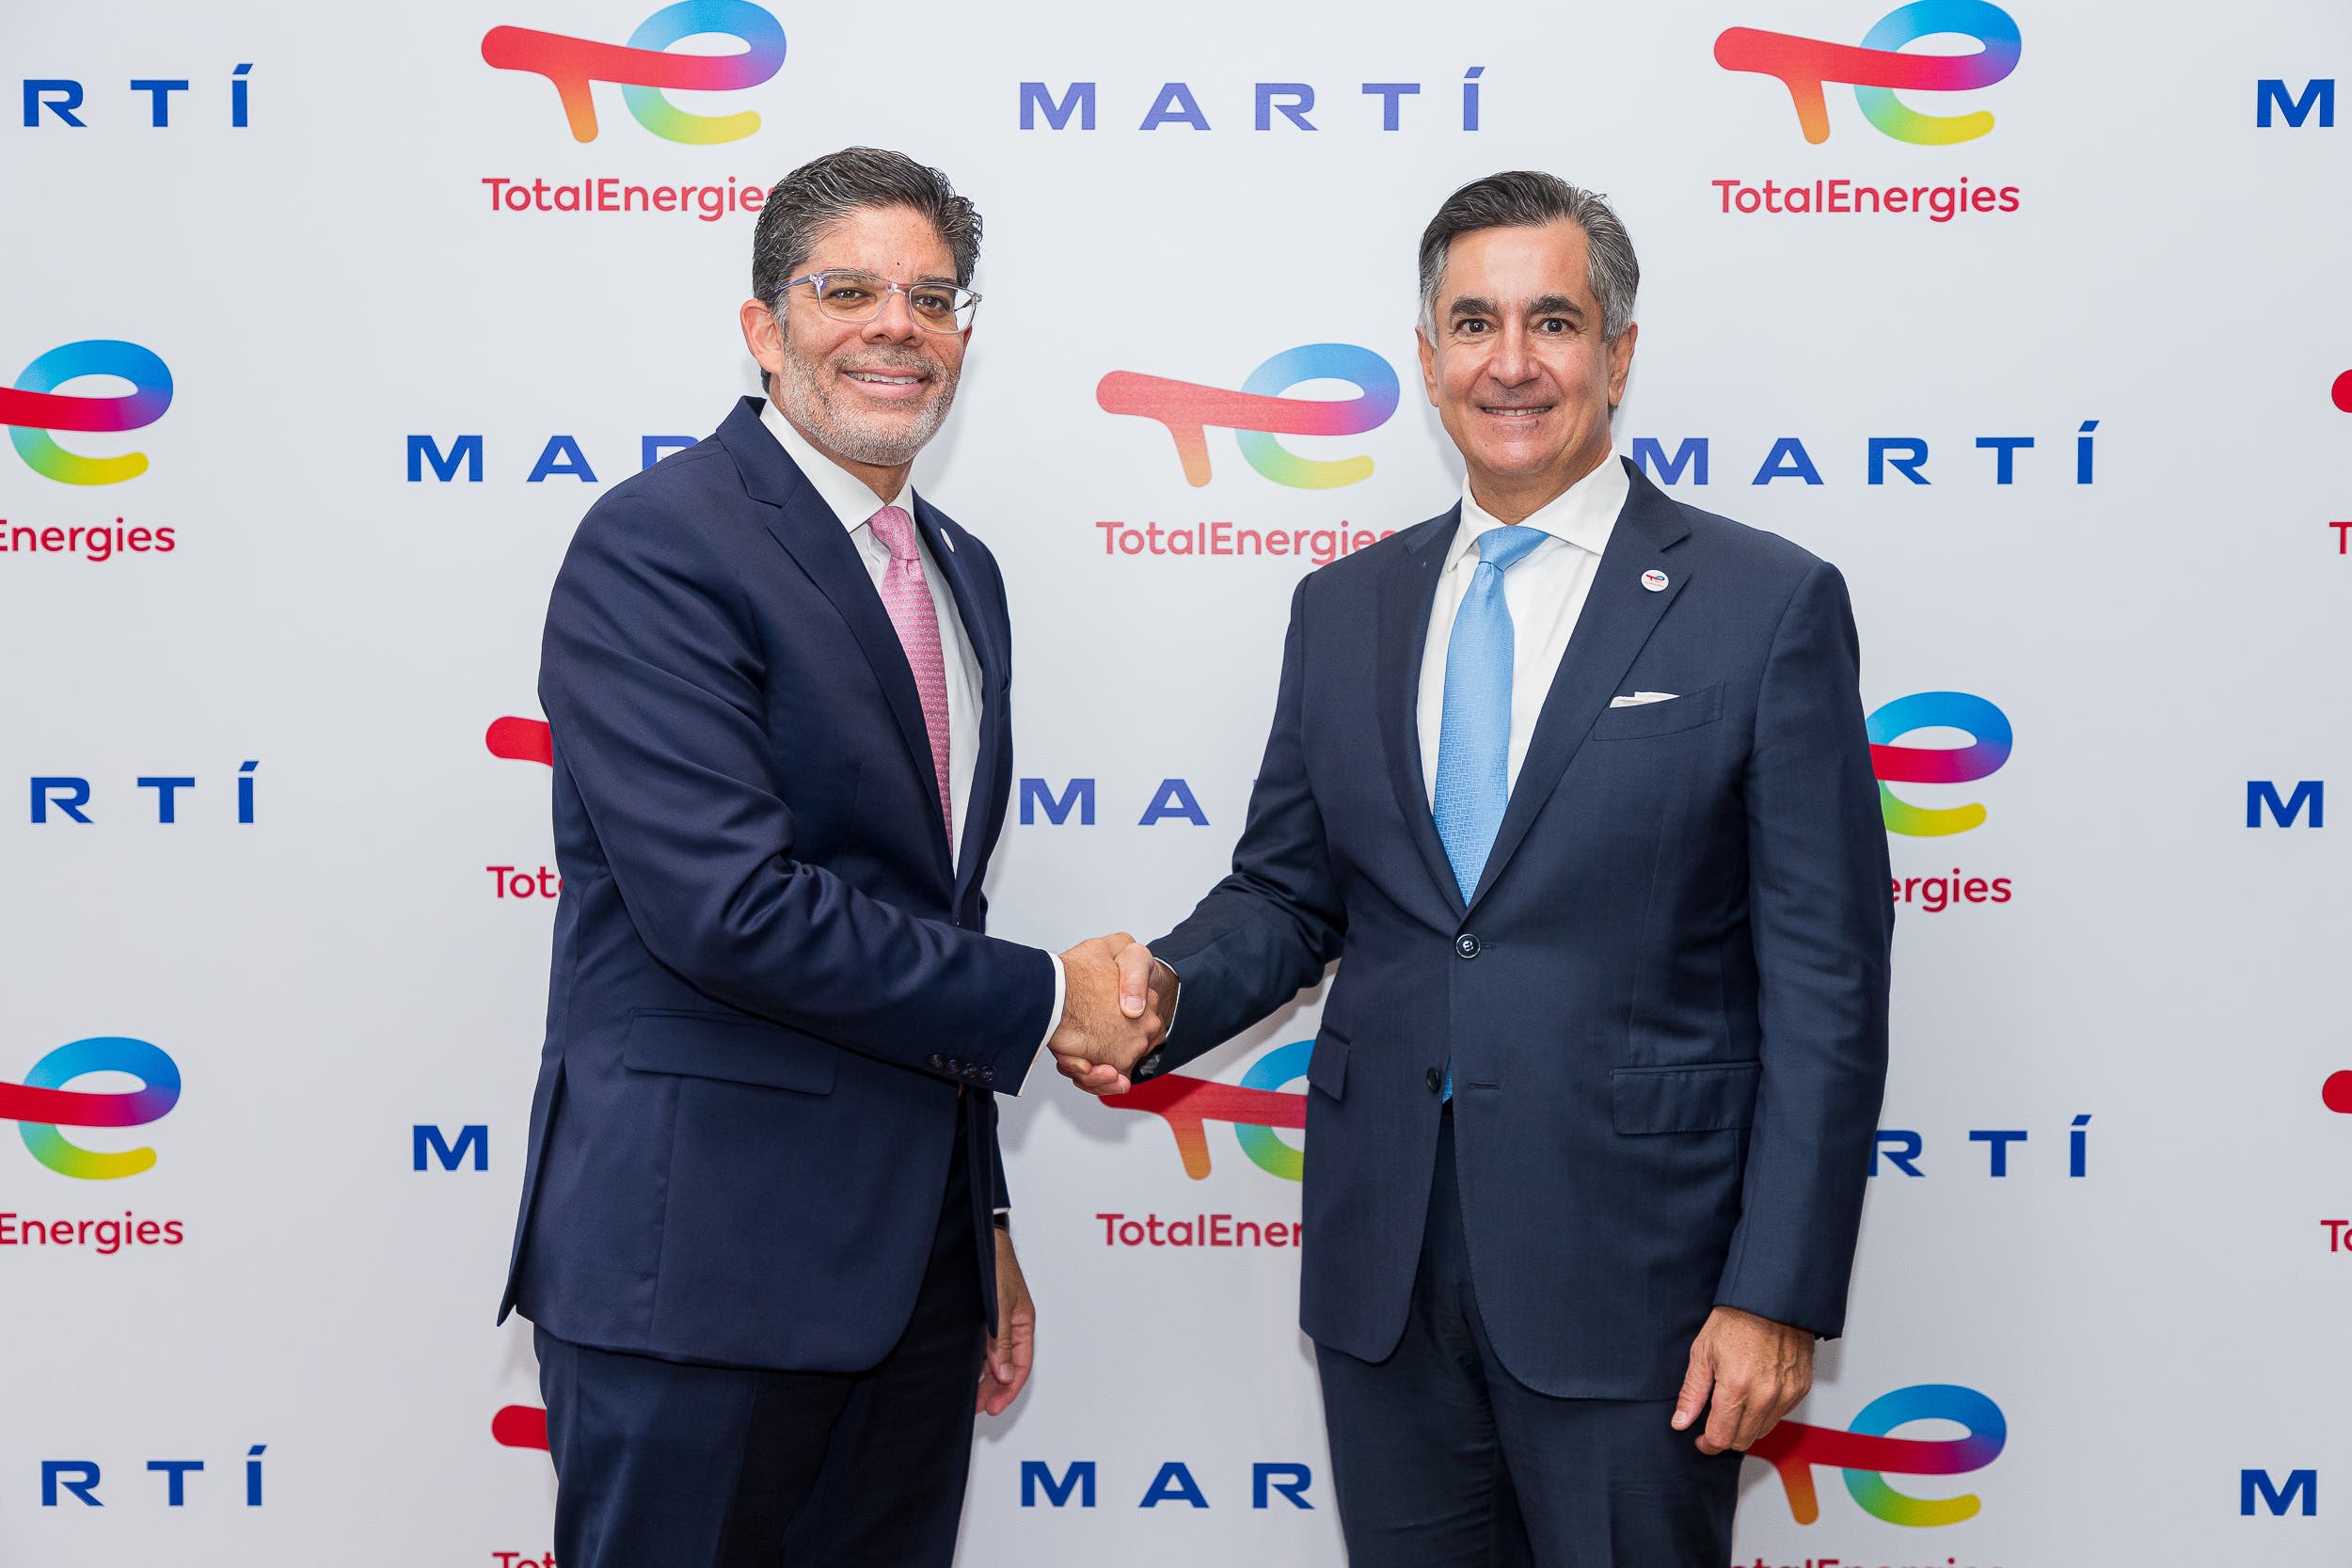 TotalEnergies y MARTÍ formalizan alianza estratégica para fortalecer desarrollo sostenible y transición energética en mercado